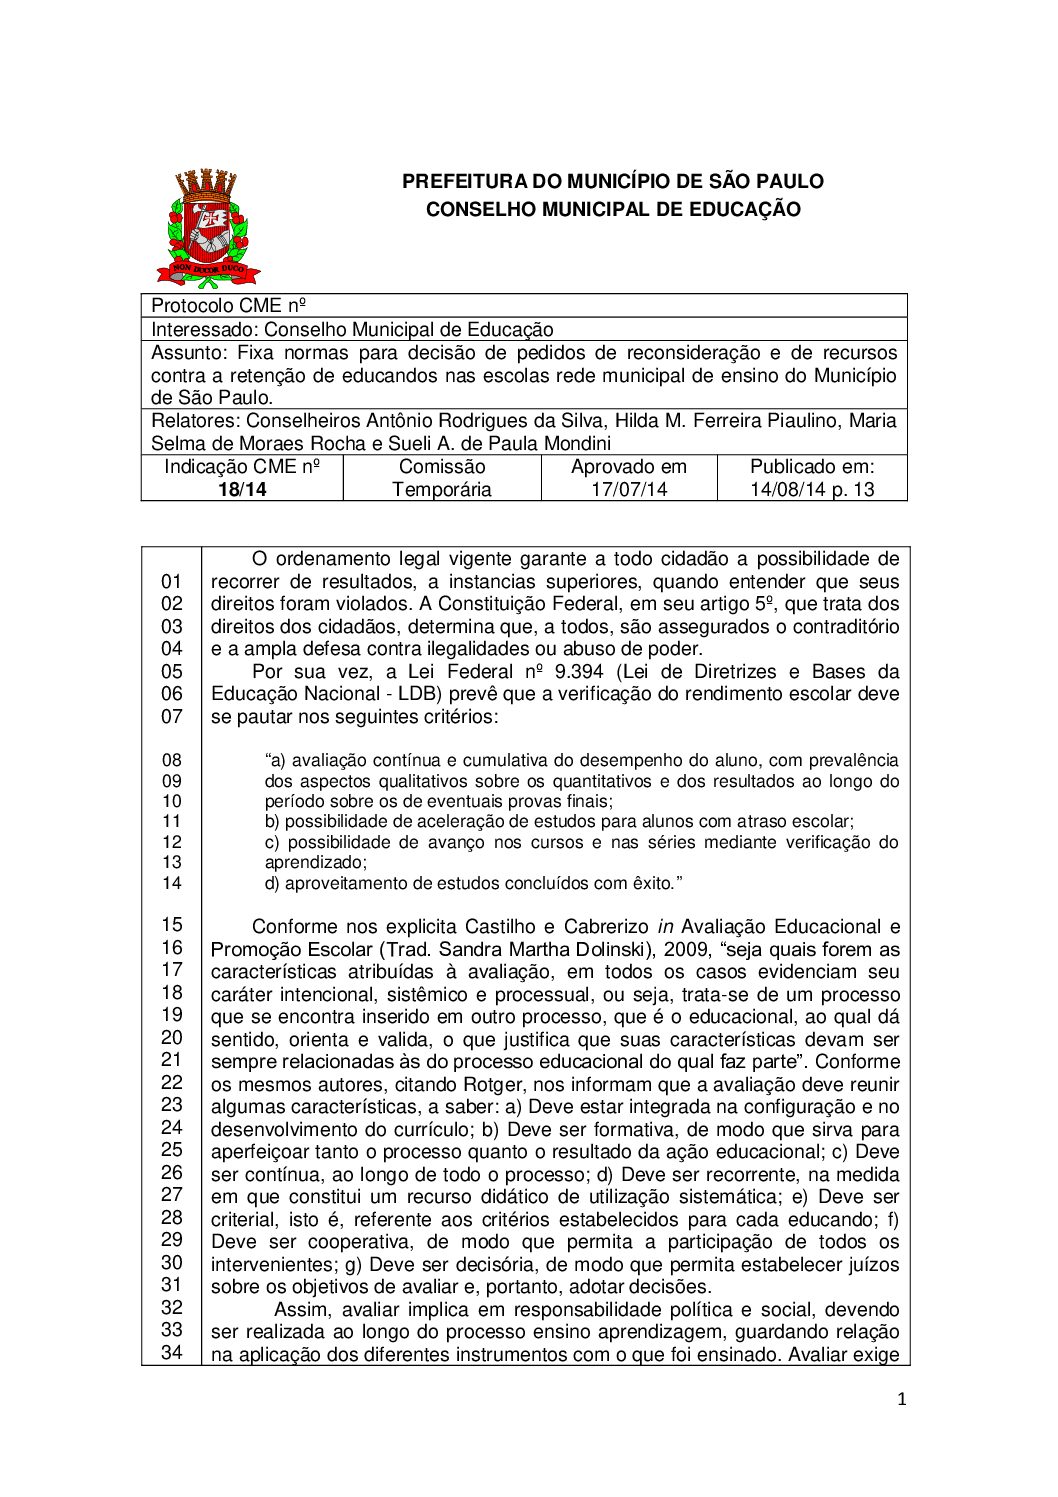 Indicação CME nº 18/2014 - Fixa normas para decisão de pedidos de reconsideração e de recursos contra a retenção de educandos nas escolas rede municipal de ensino do Município de São Paulo